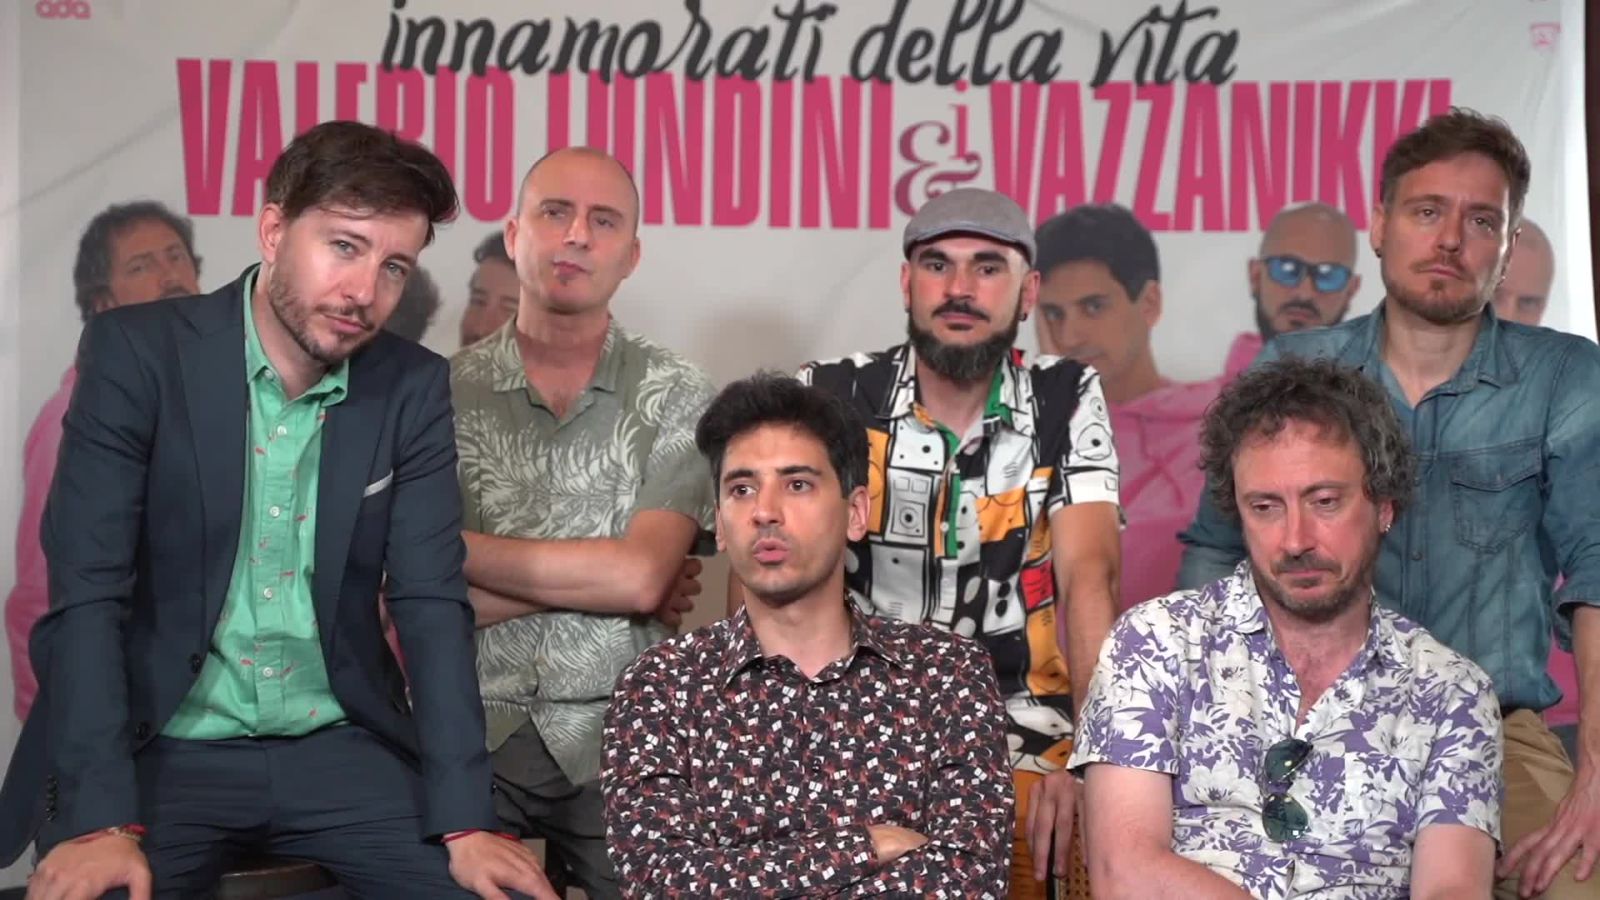 Valerio Lundini e i Vazzanikki, la nostra video intervista